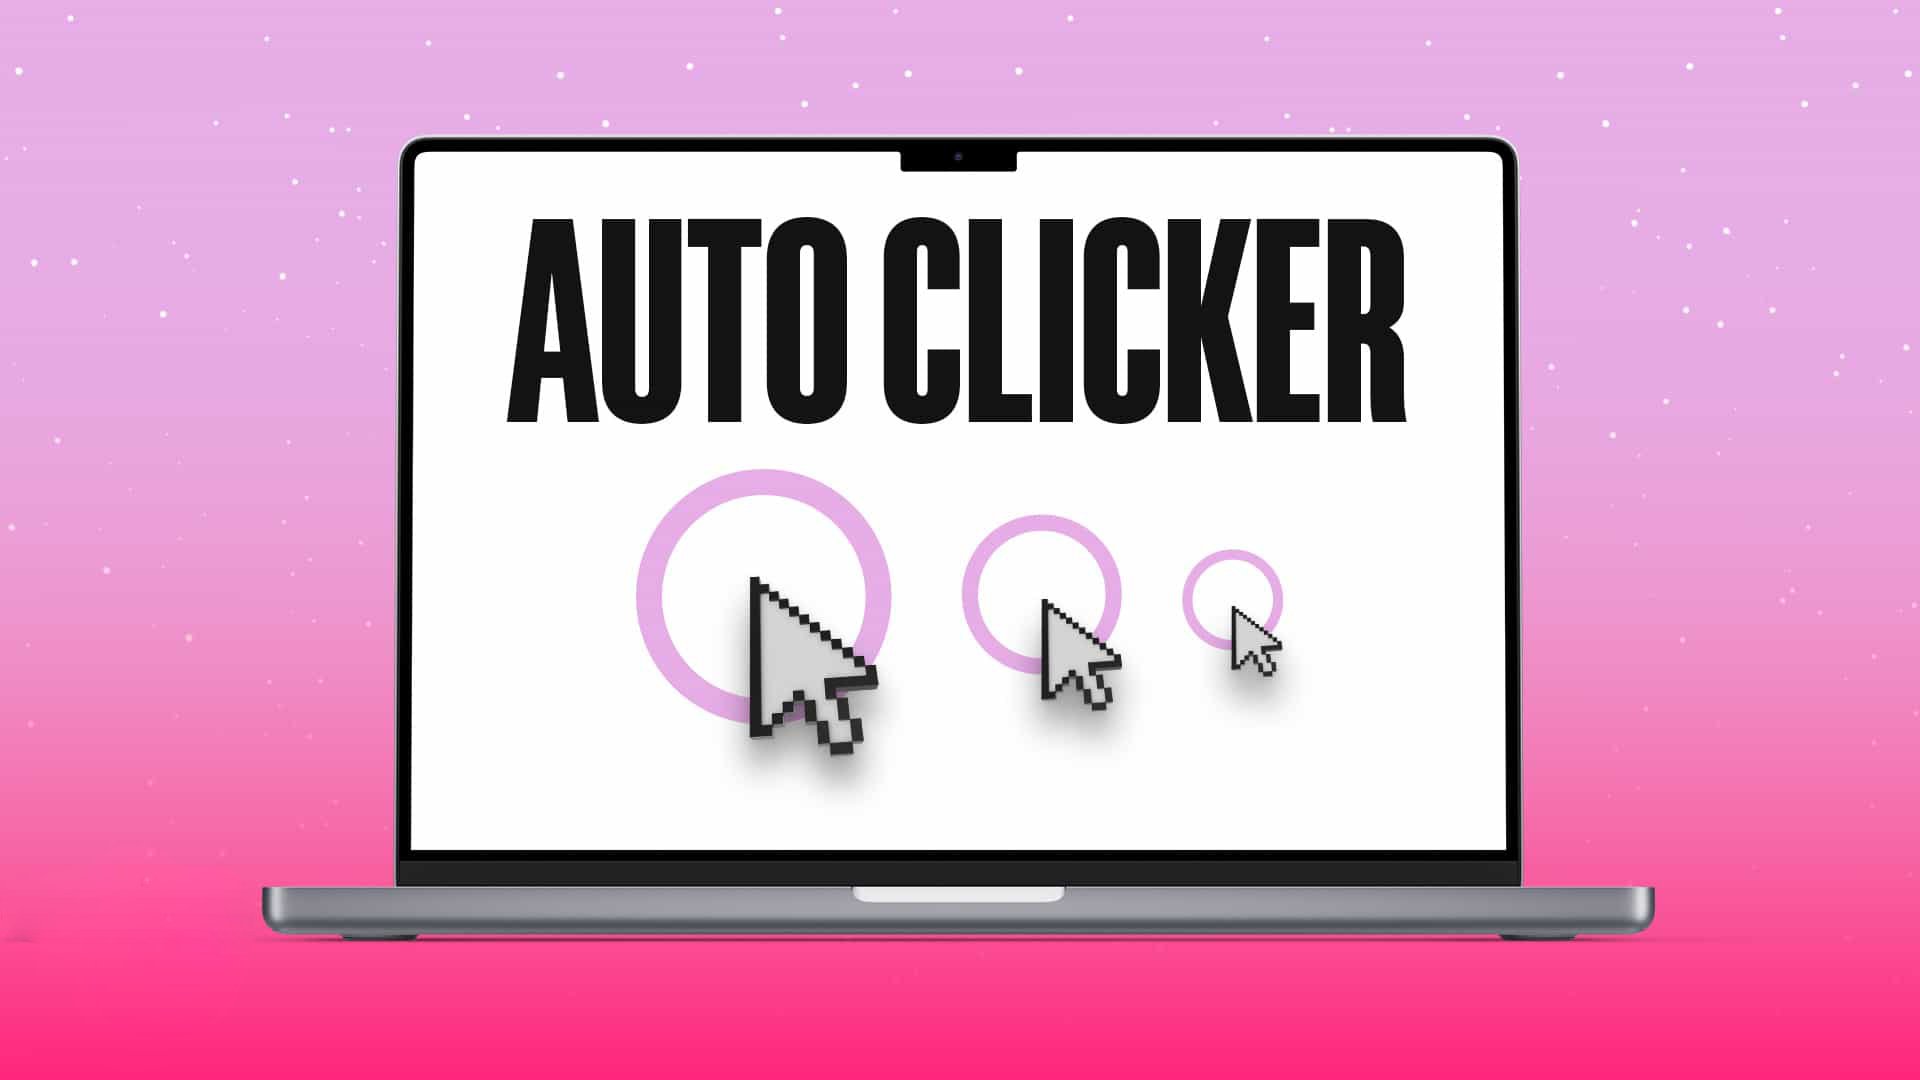 Auto Clicker for Mac